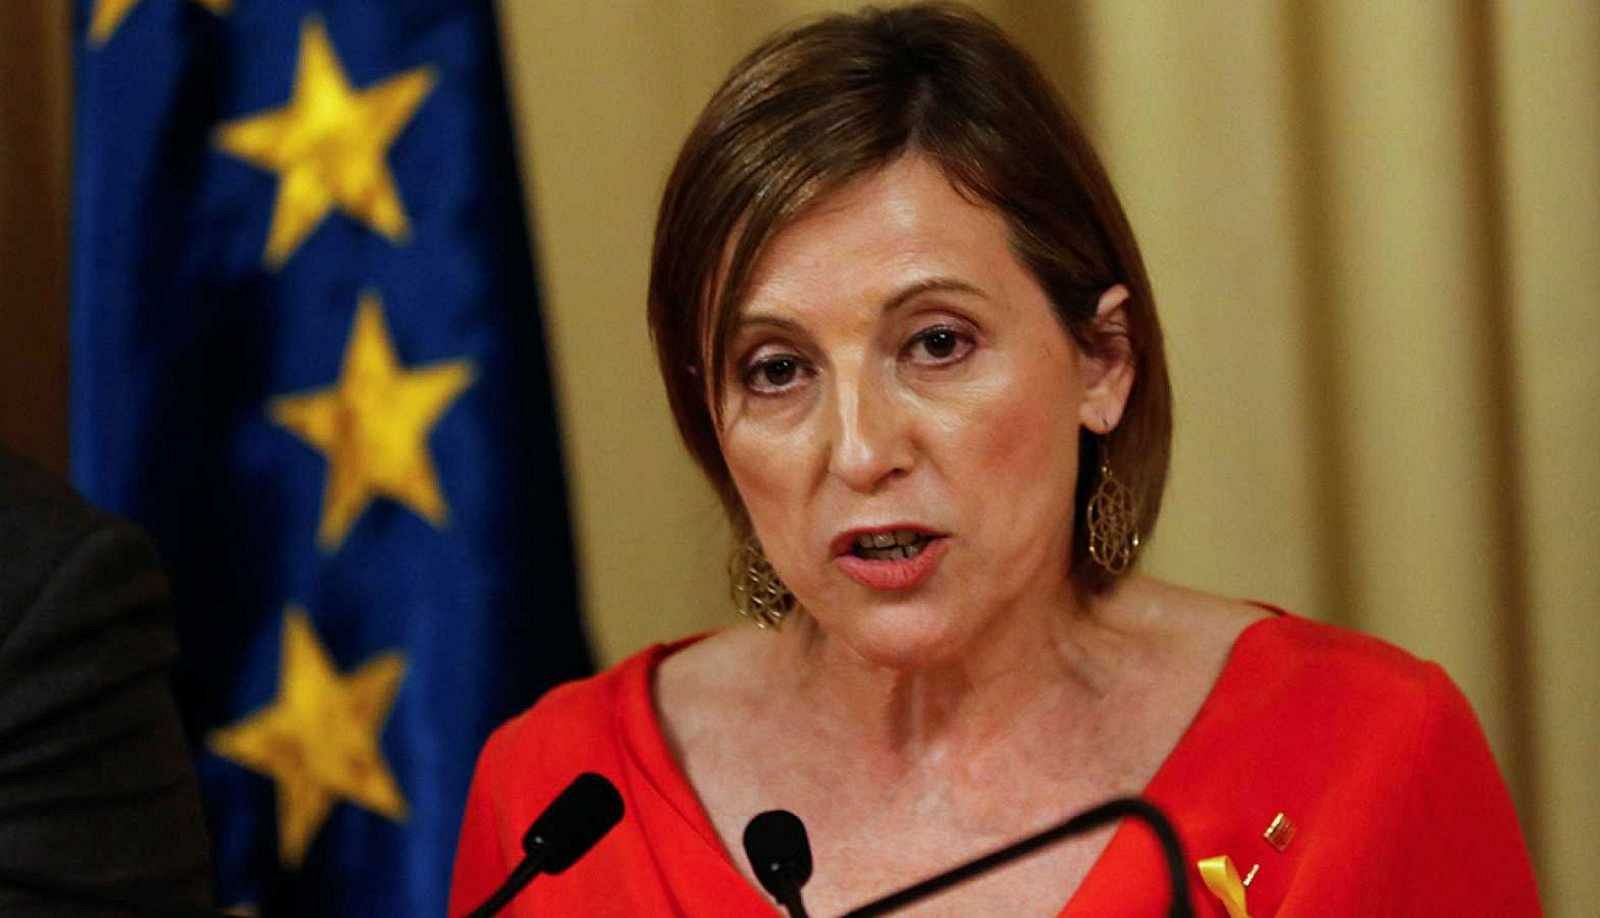  La expresidenta del Parlament de Cataluña Carme Forcadell en una imagen de archivo.